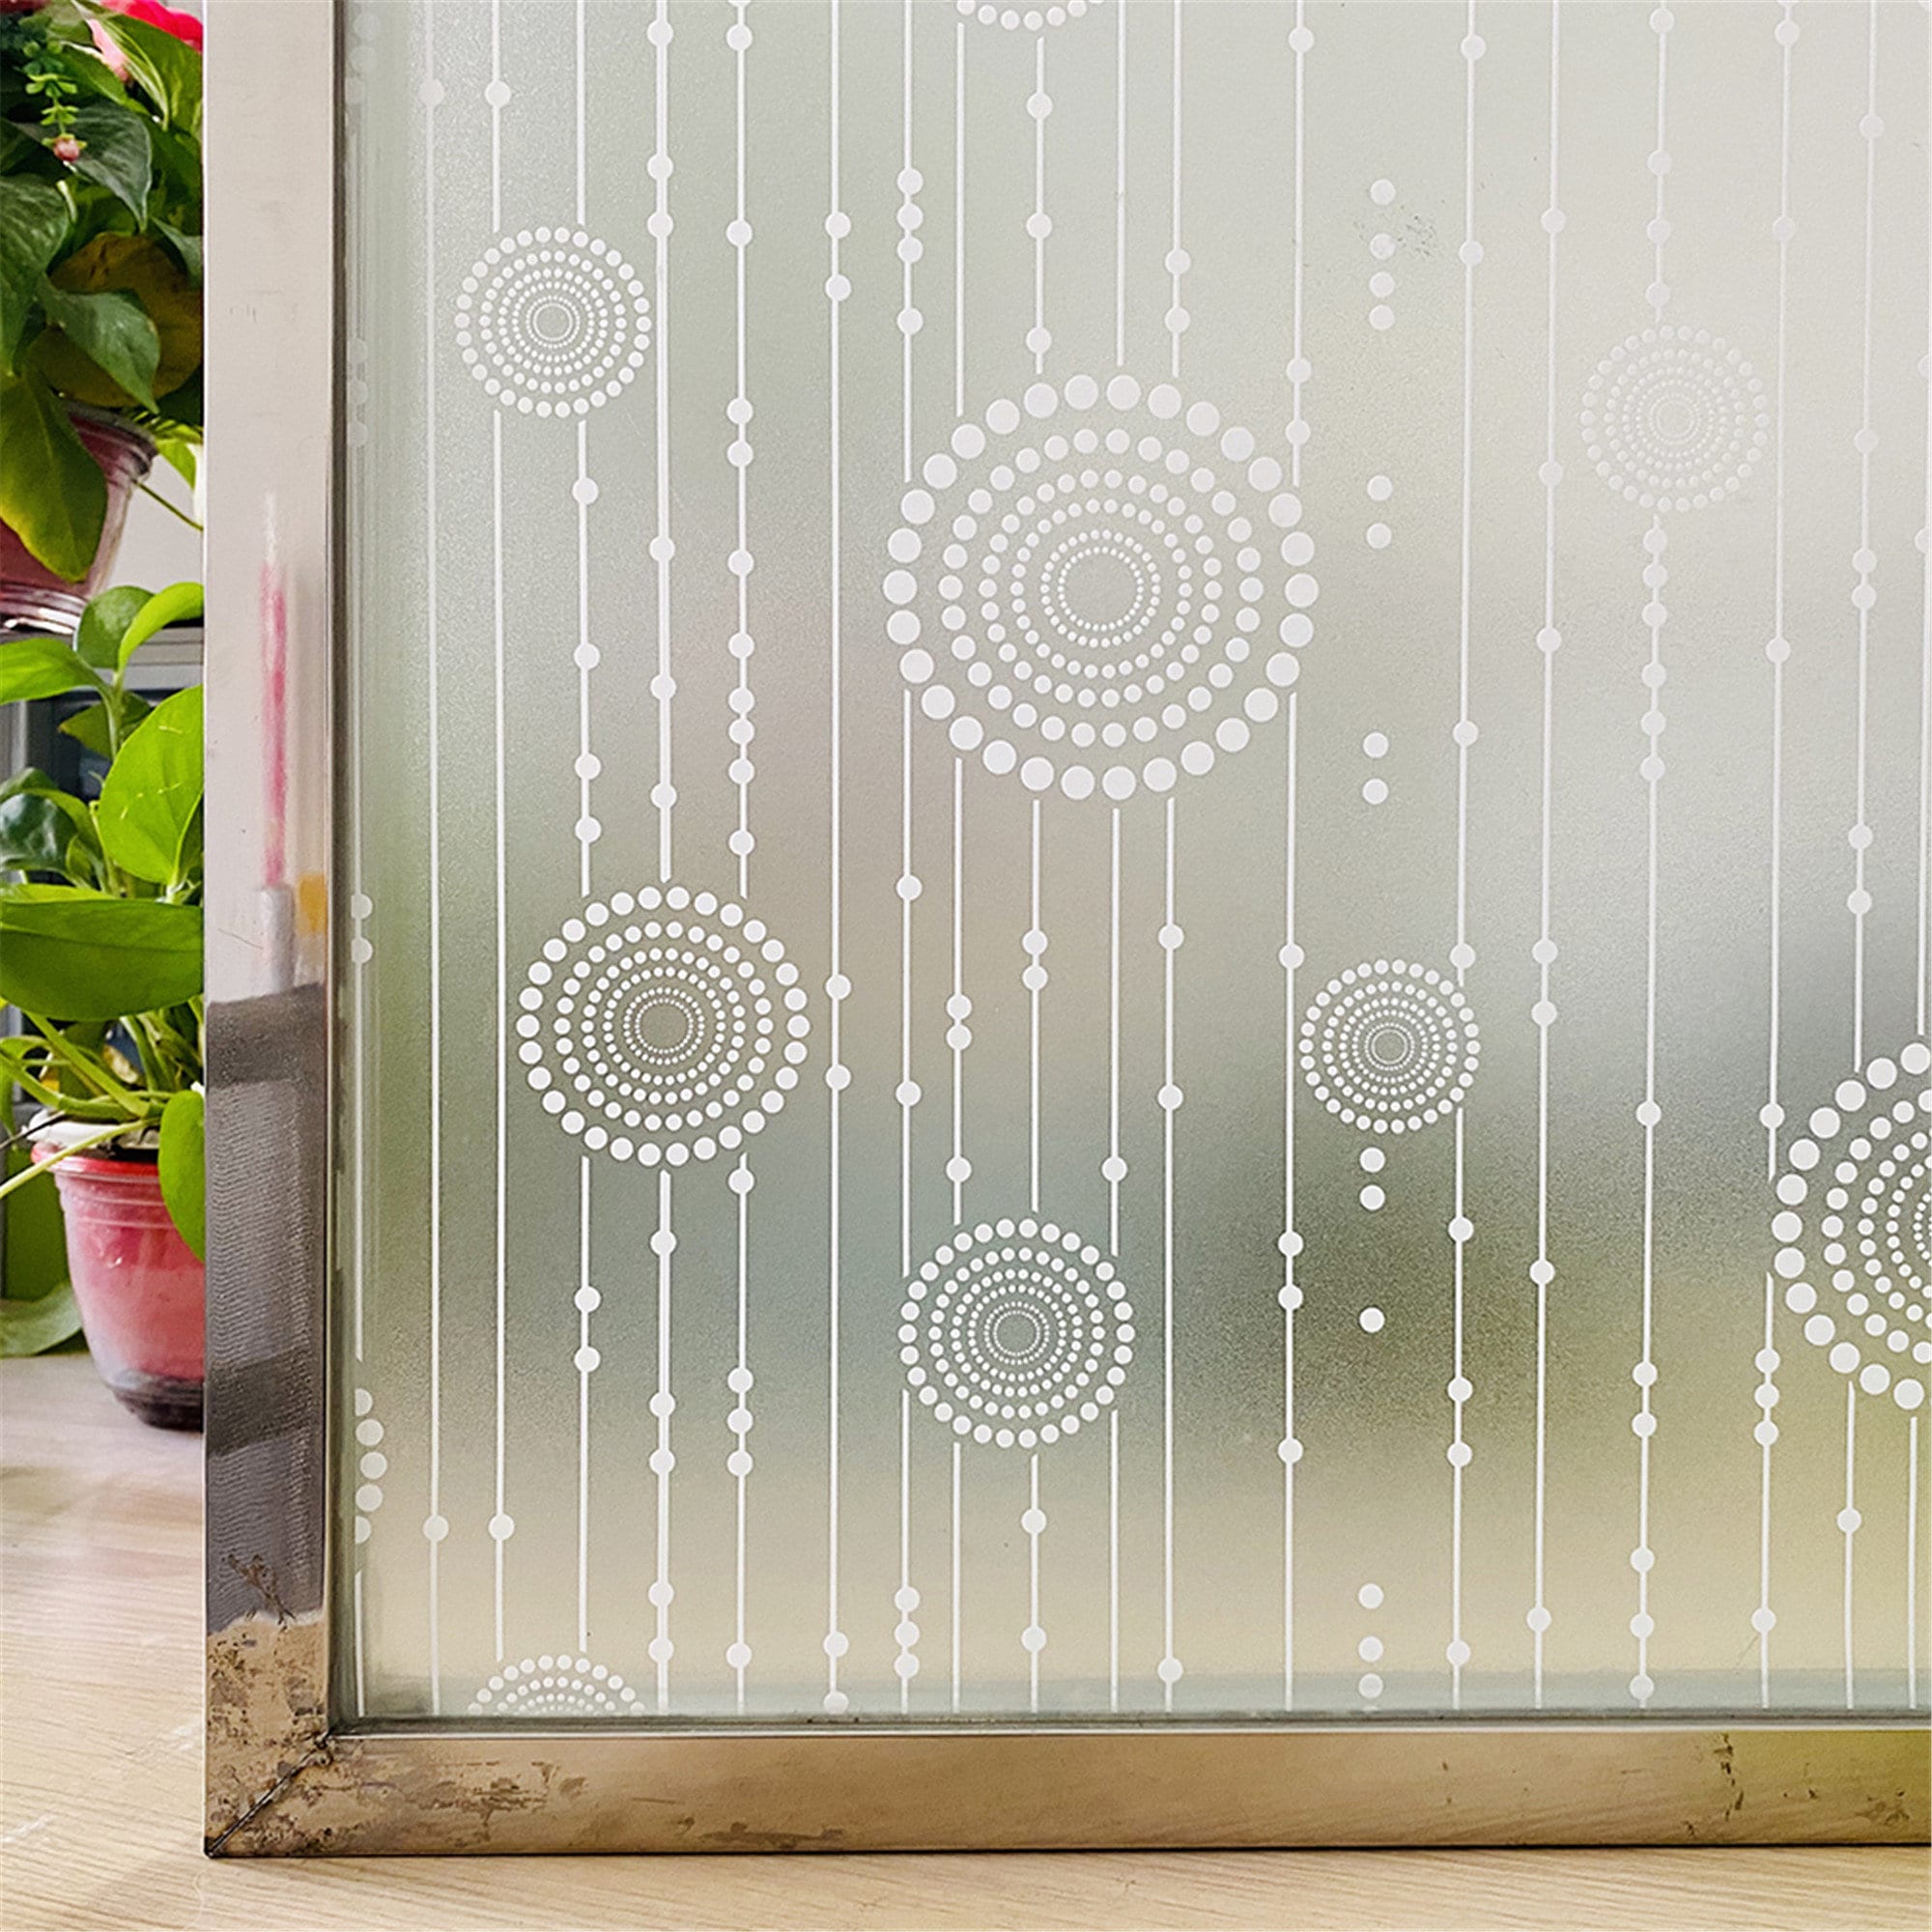 3D Matt Fensterfolie Sichtschutz Glasmalerei Vinyl Selbstklebende Folie  Frosted Wärmedämmung Fensteraufkleber für Haustür - .de